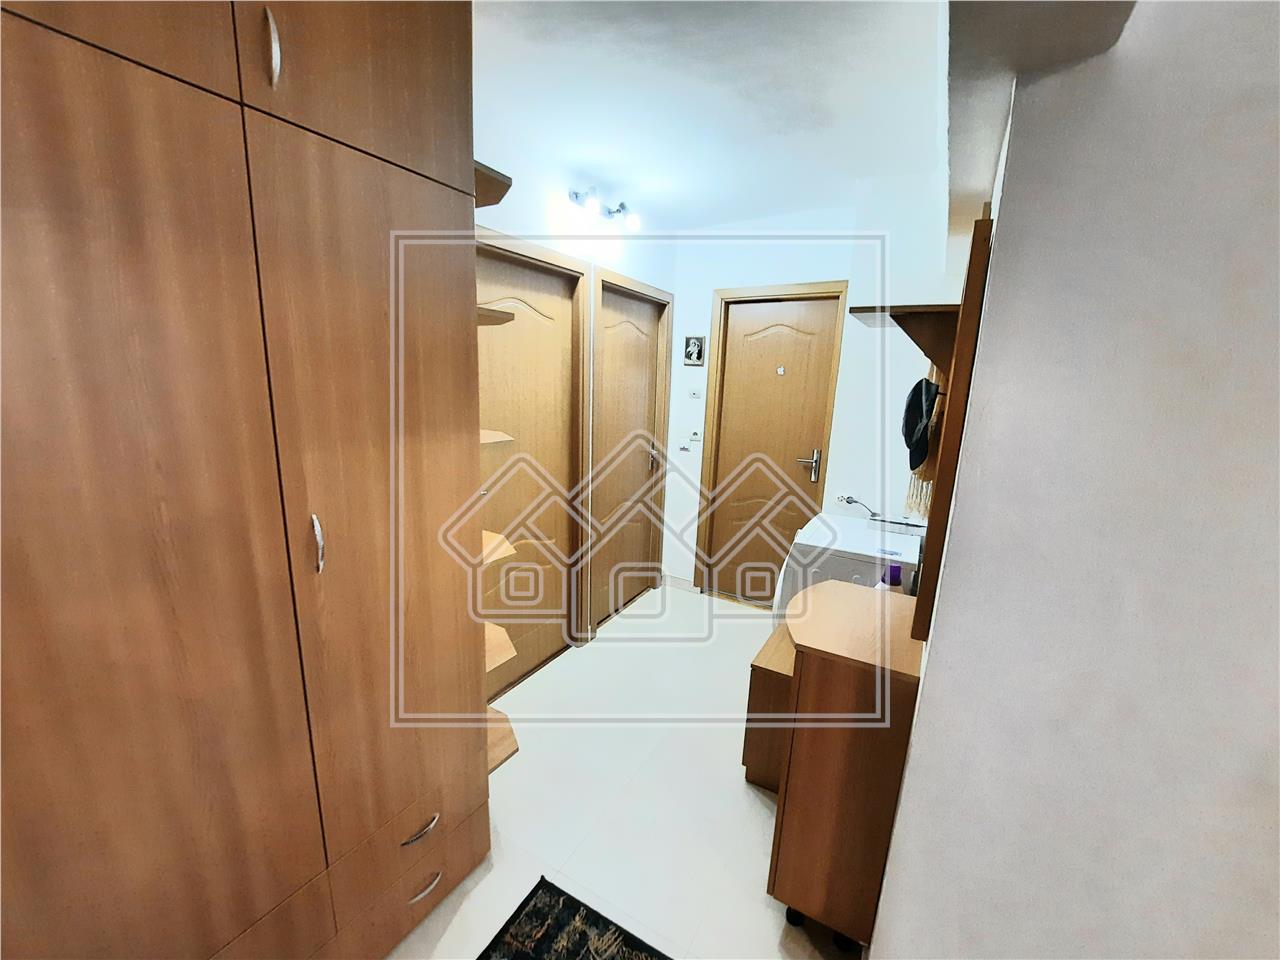 Apartment for rent in Alba Iulia - 3 rooms - 75 sqm - Cetate area